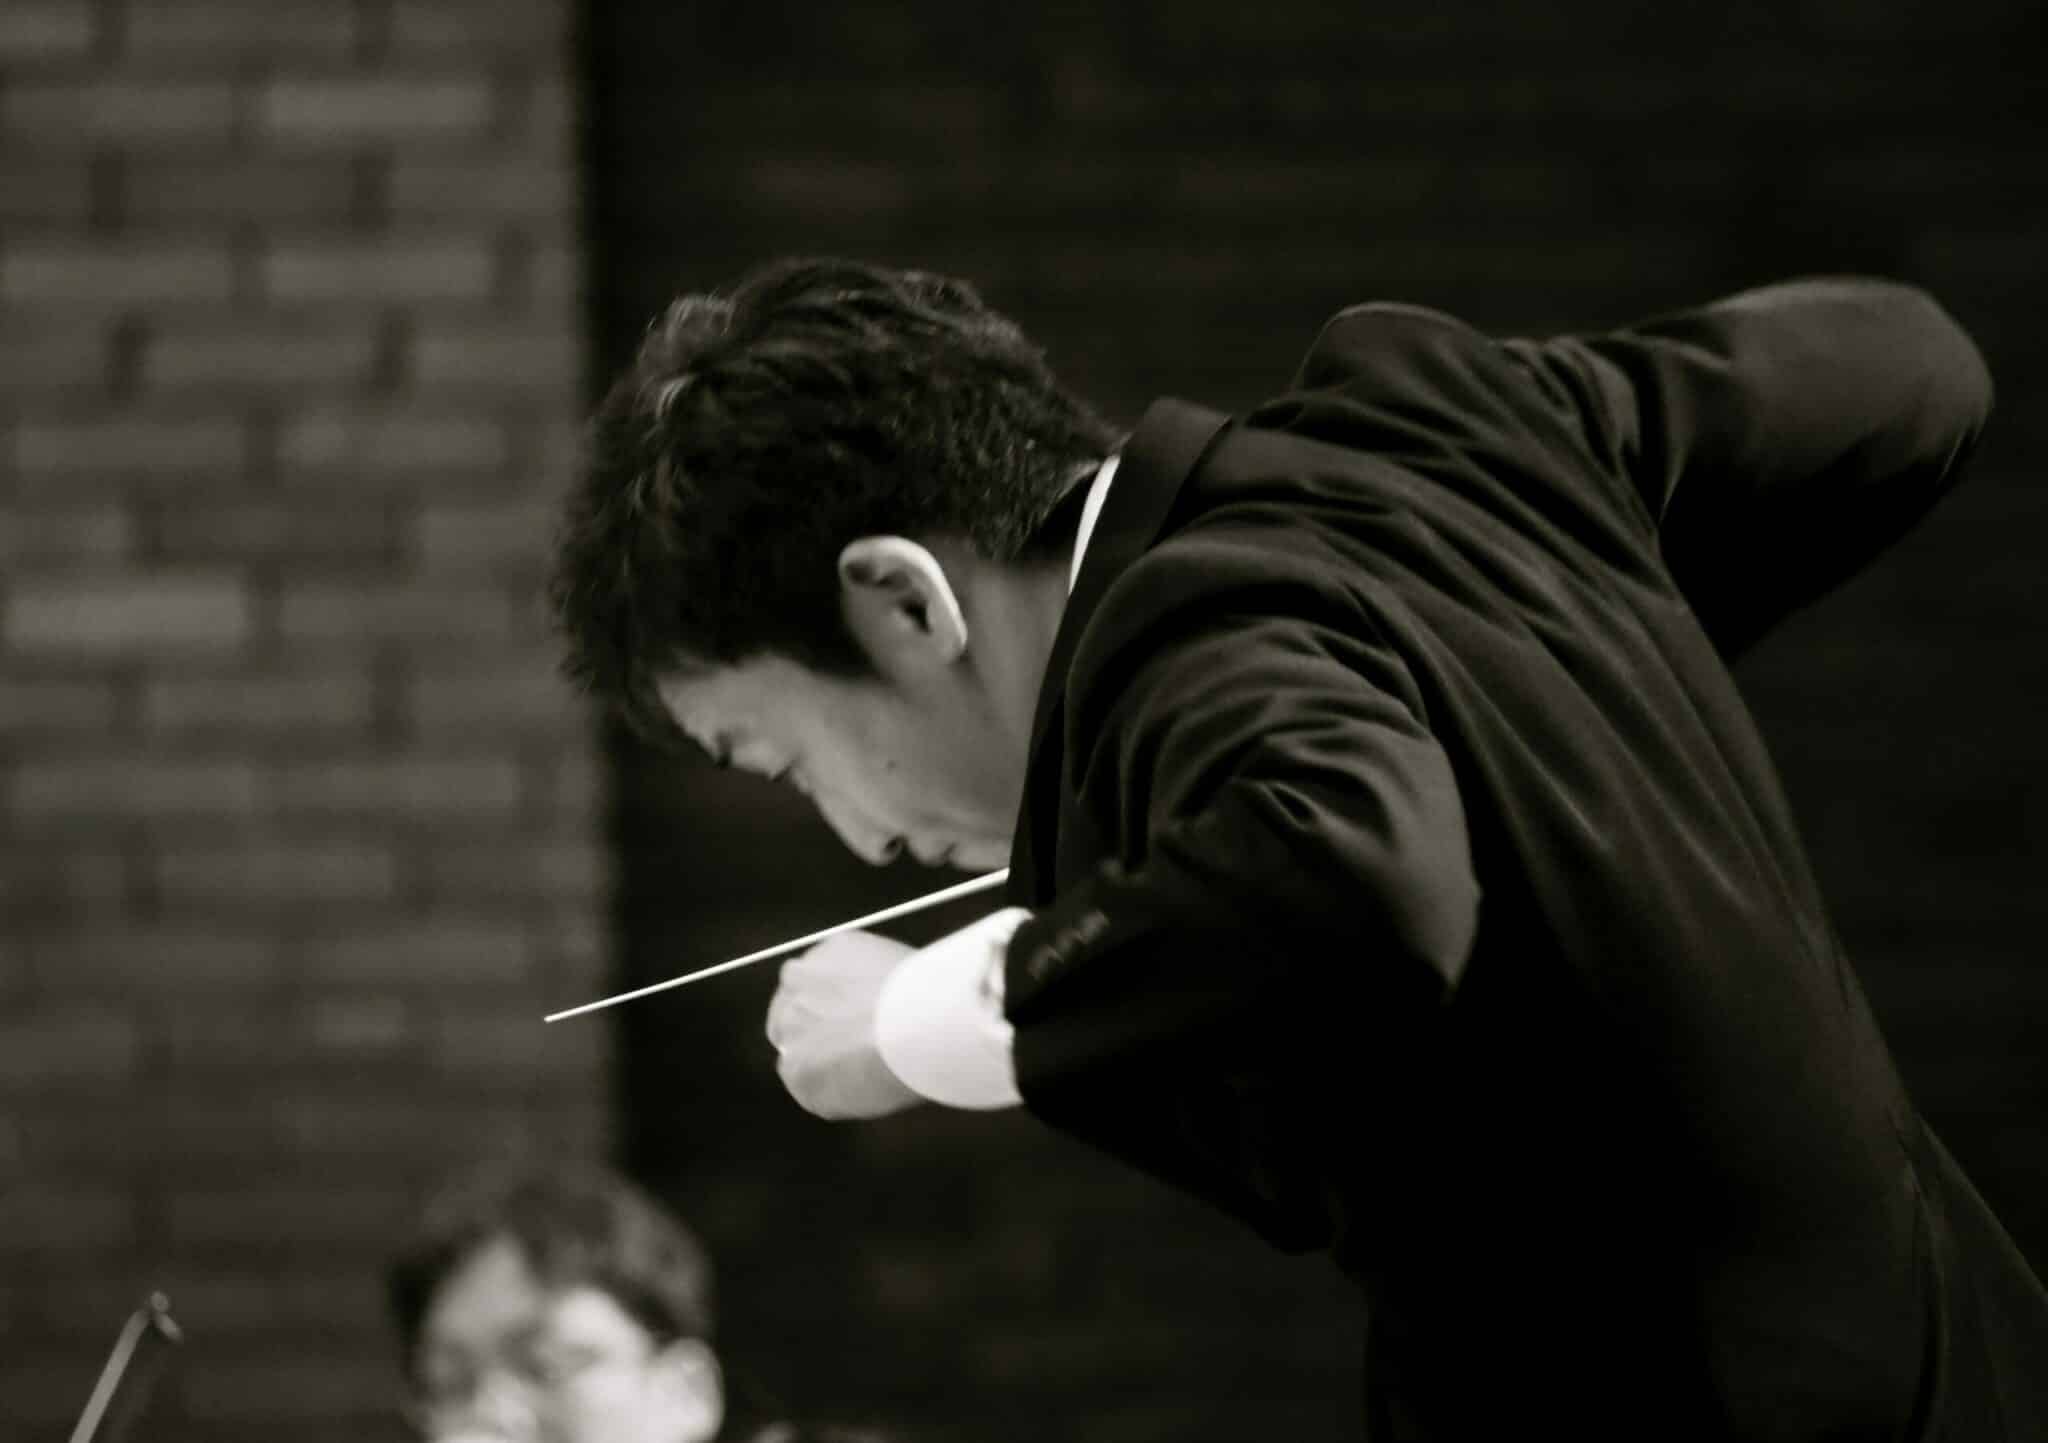 Chef d'orchestre Kazuo ota